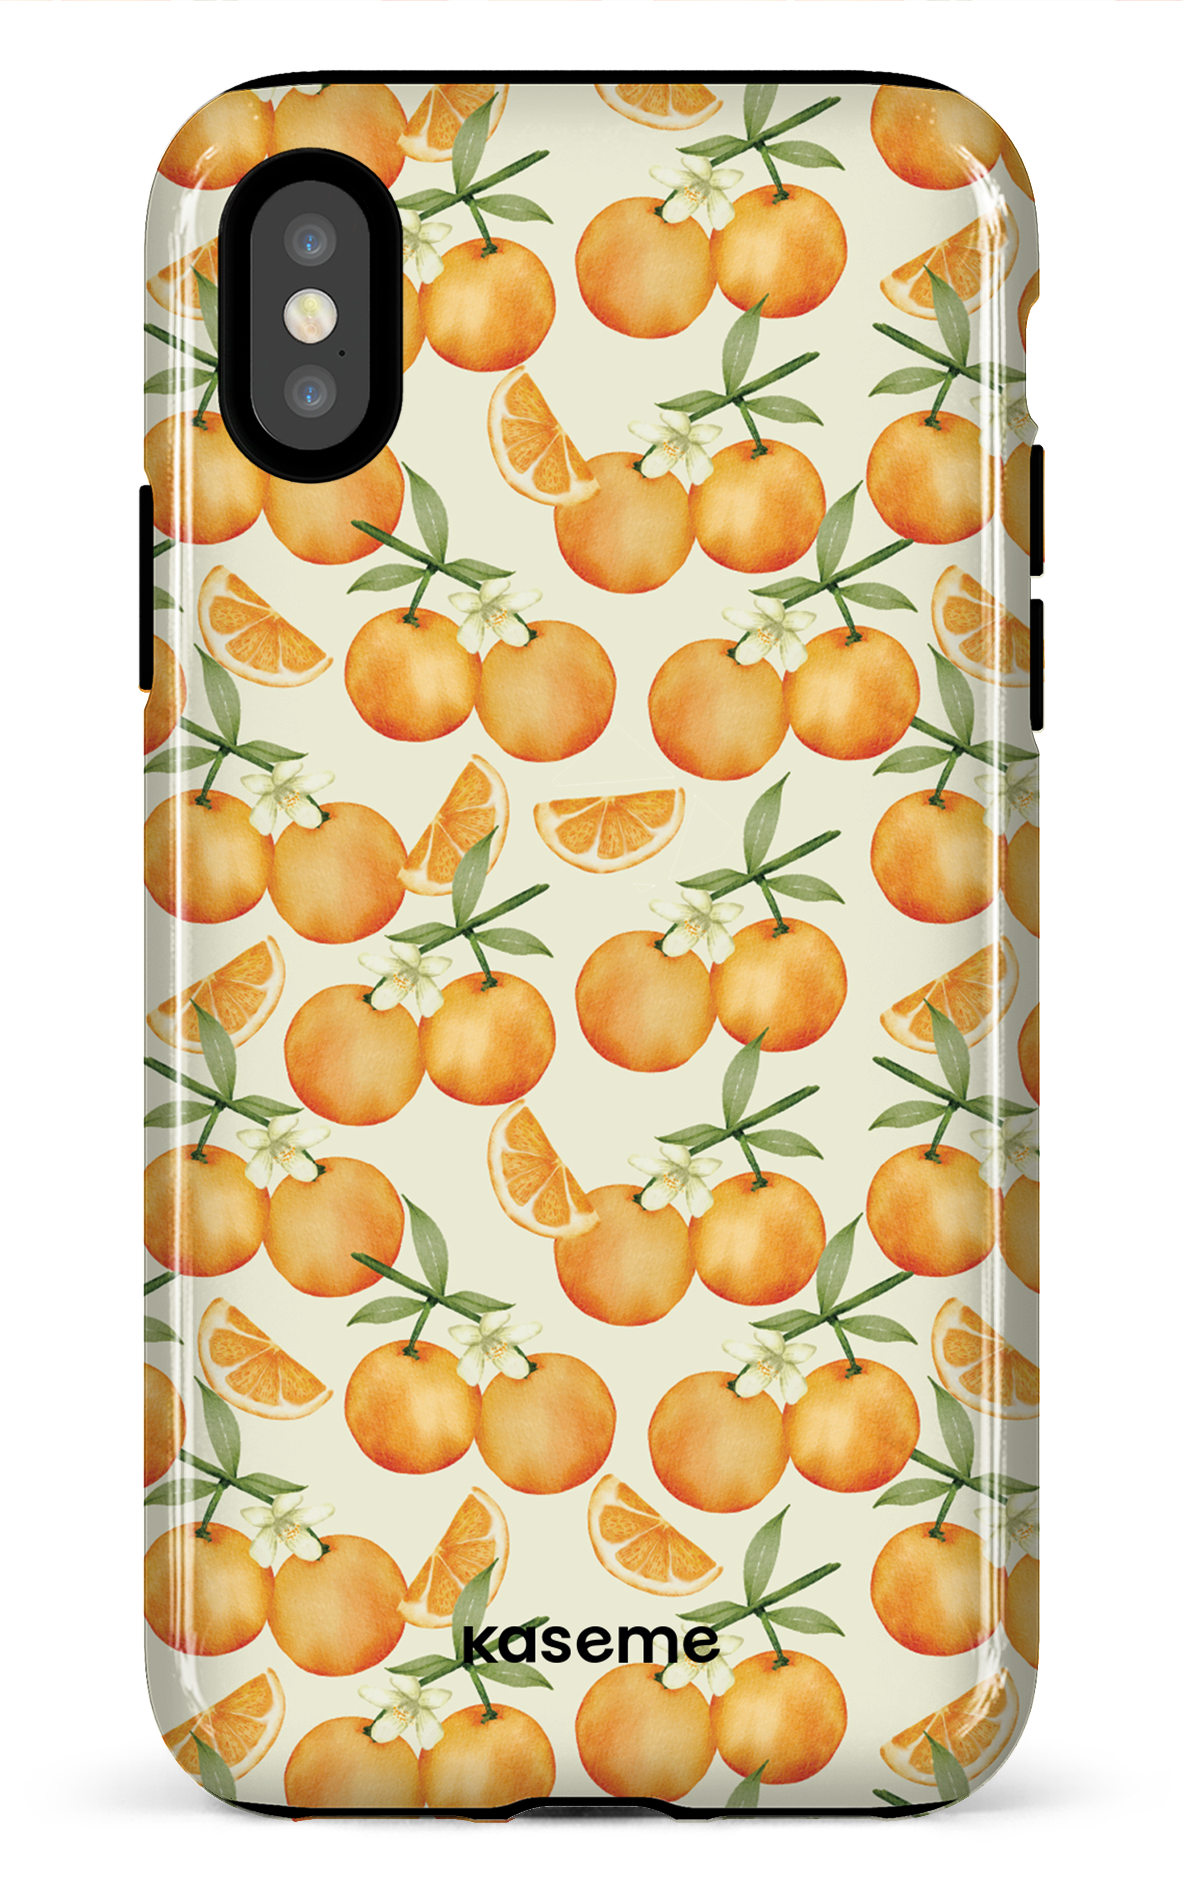 Tangerine - iPhone X/XS